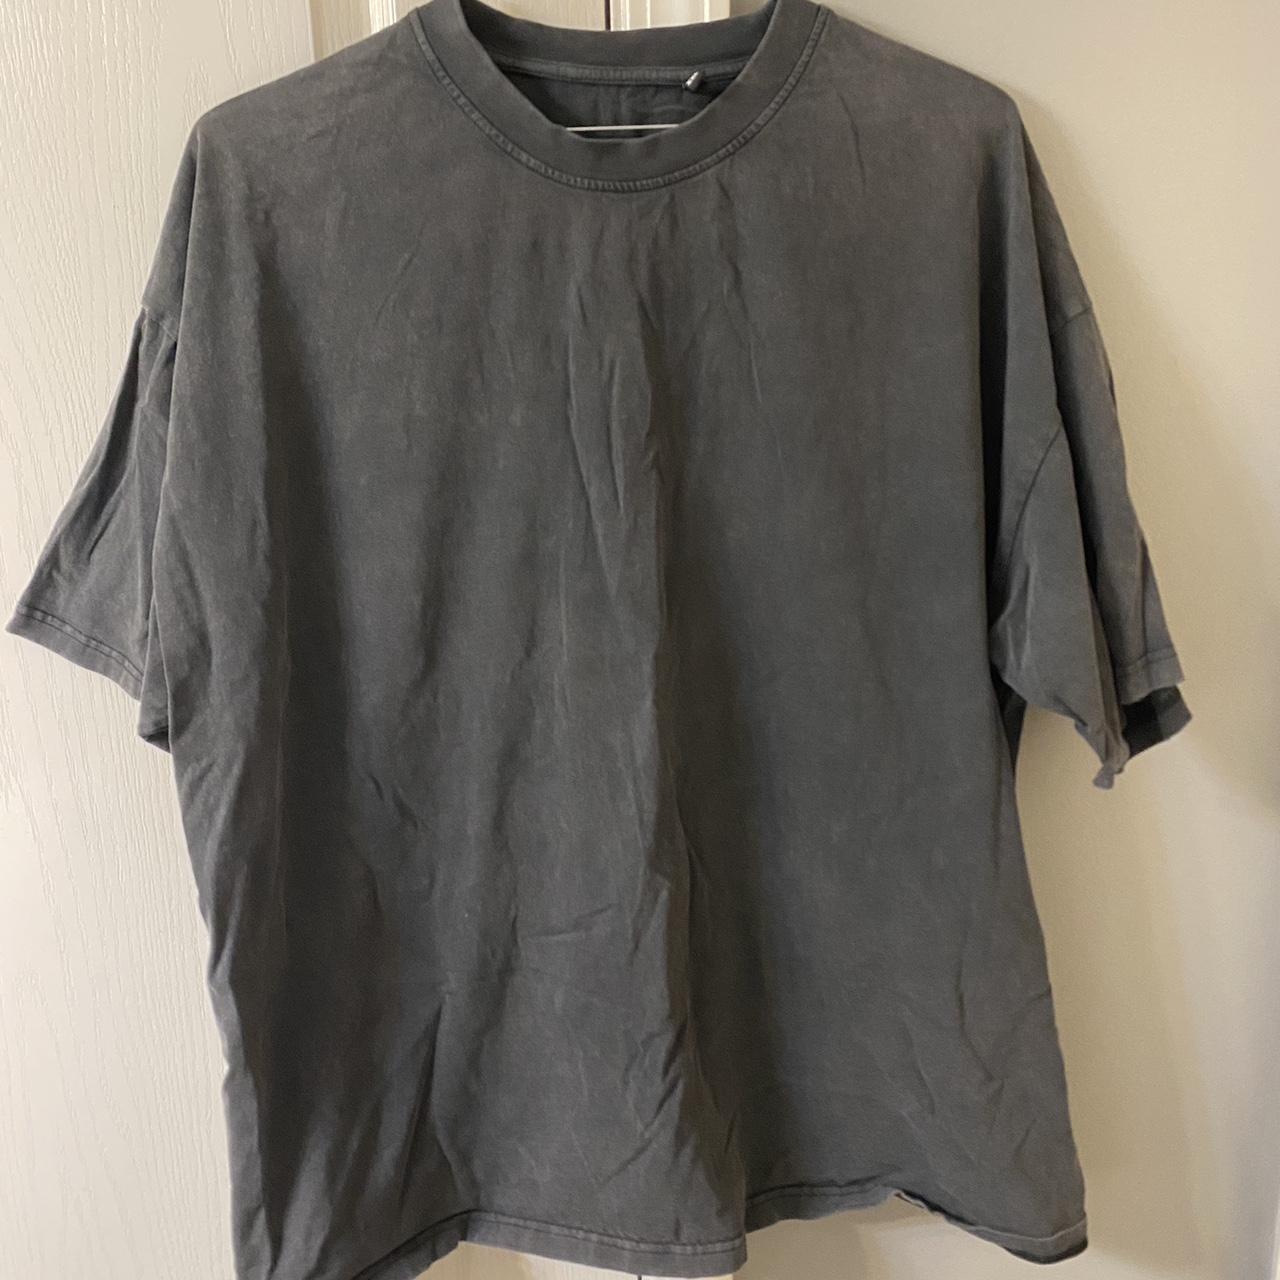 Rue Porter Garment Dyed T-Shirt Tee XXL made in... - Depop